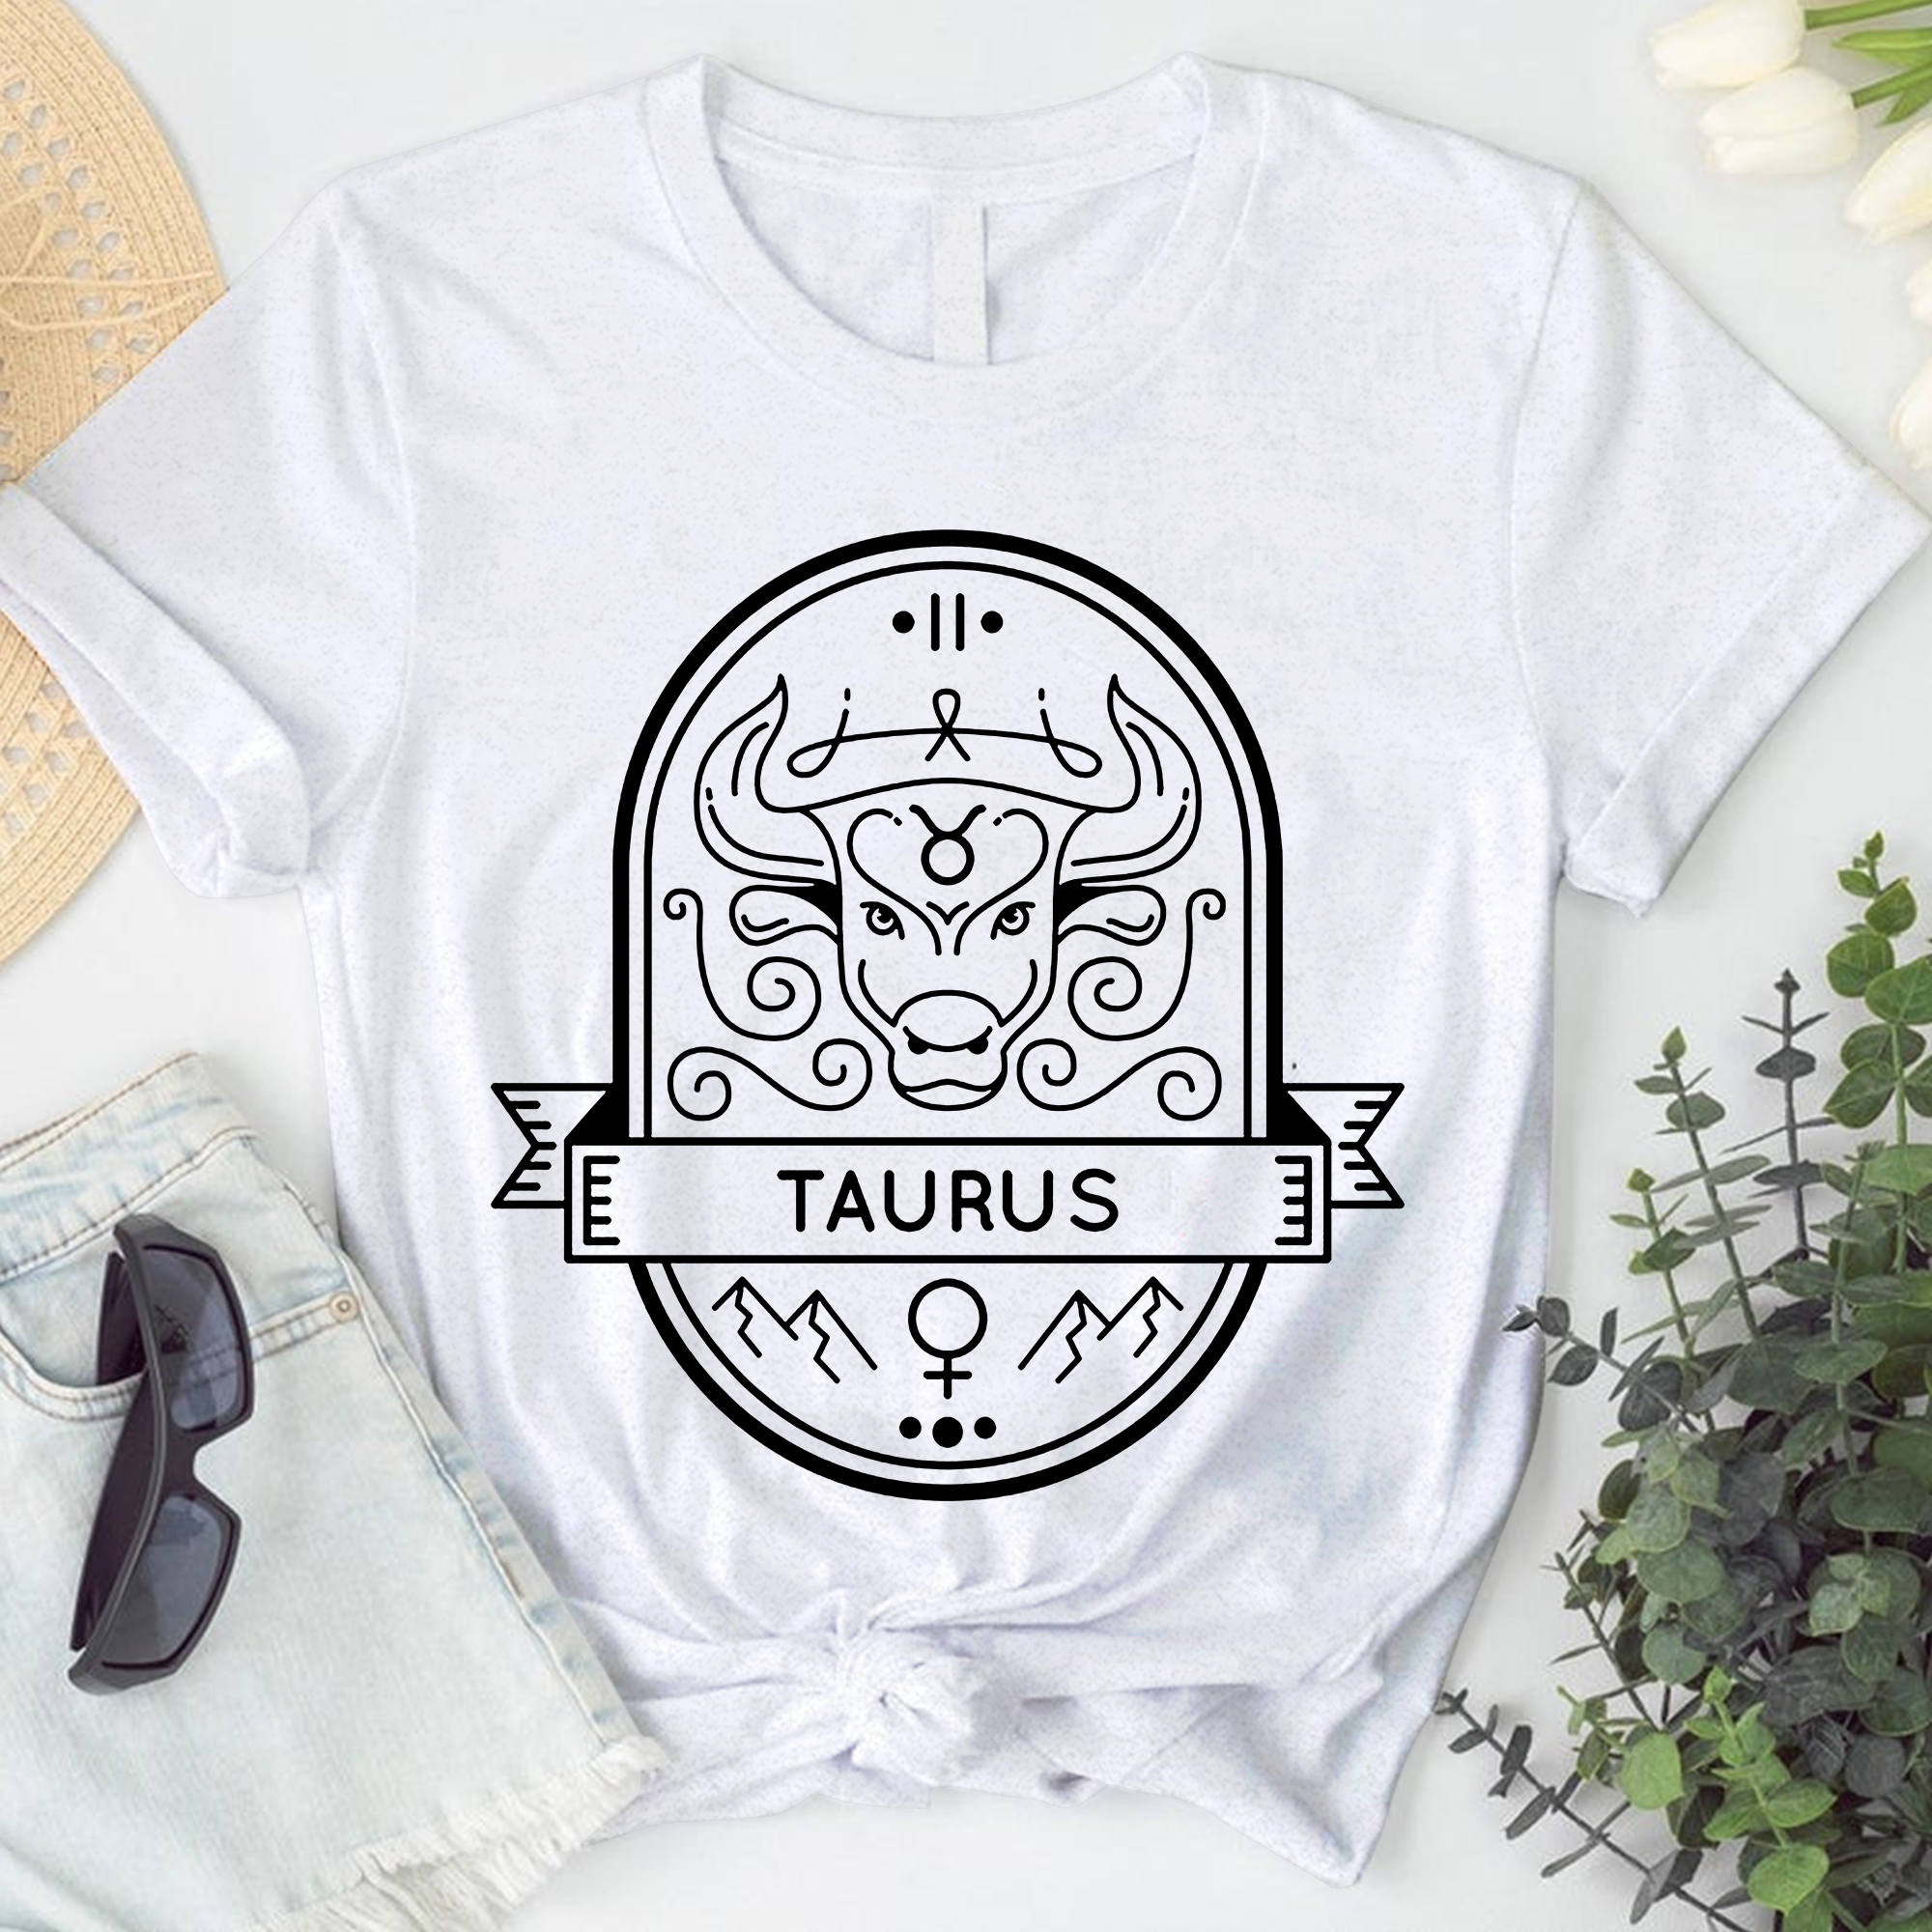 Taurus Astrology Shirt, Zodiac Taurus Birthday Gift, Horoscope Constellations Shirt